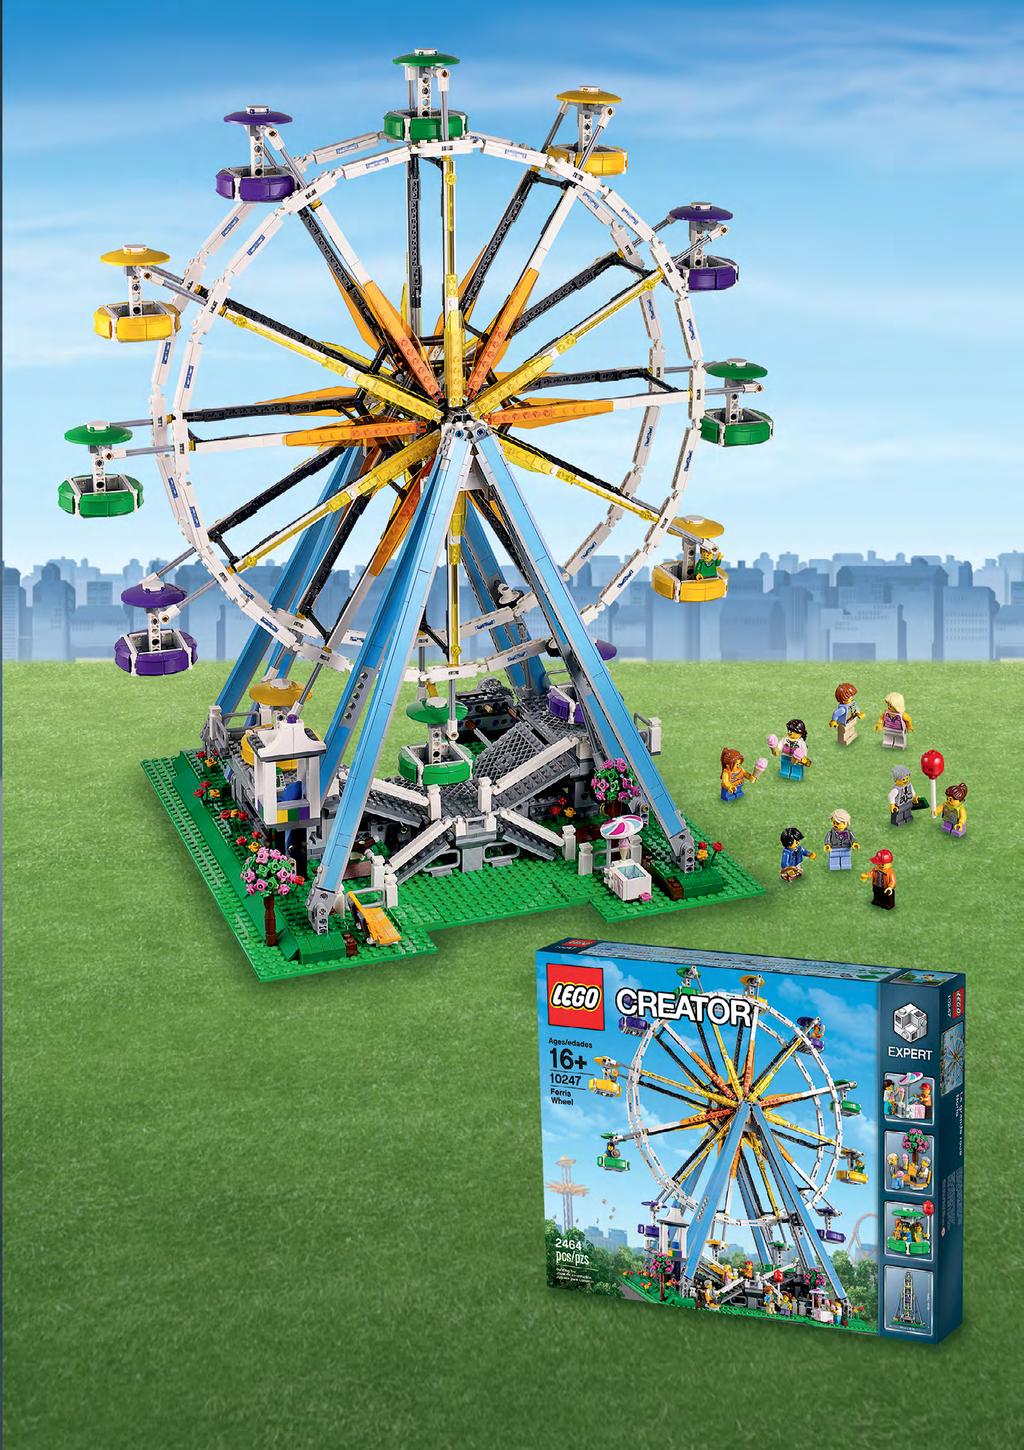 A KARNEVÁLHANGULAT MEG- ÉRKEZETT A NAPPALINKBA! A hatalmas LEGO óriáskerék nosztalgikus hangulatával a rajongók egyik kedvenc darabjává válhat.